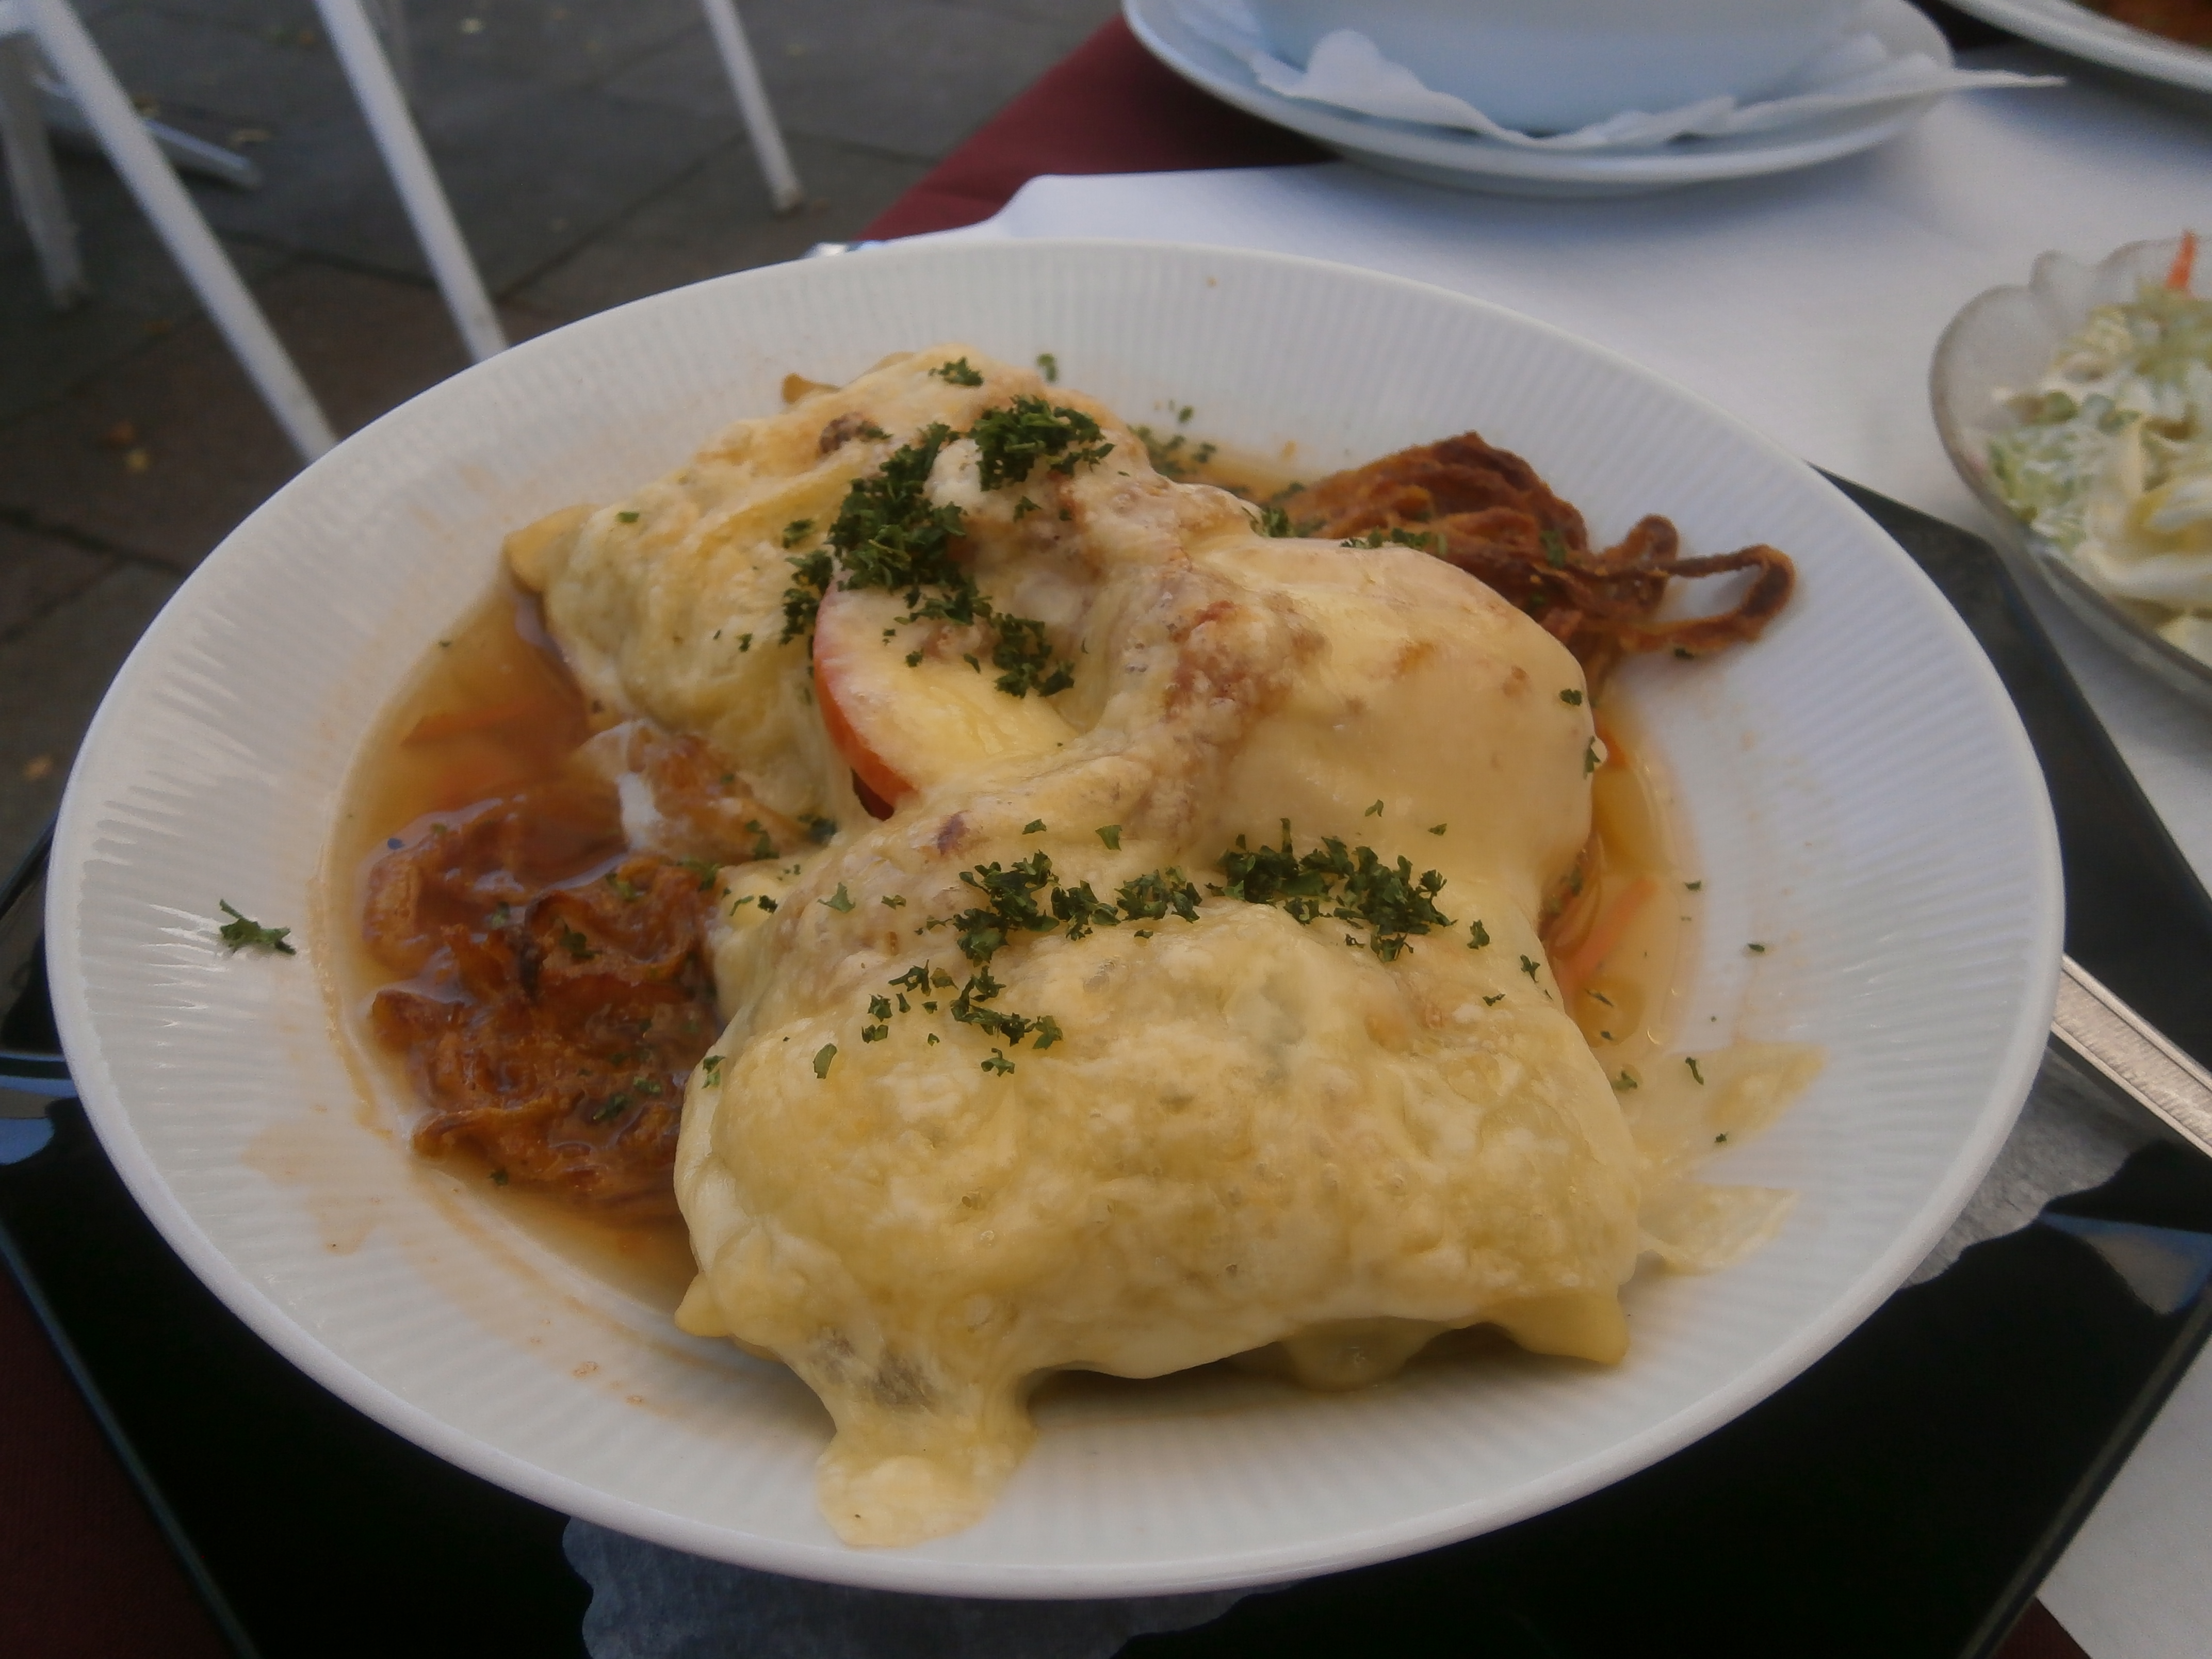 Maultaschen und Röstzwiebelchen in der Brühe mit Tomaten und Käse überbacken für 11,80 Euro. Salat gabs auch noch dazu